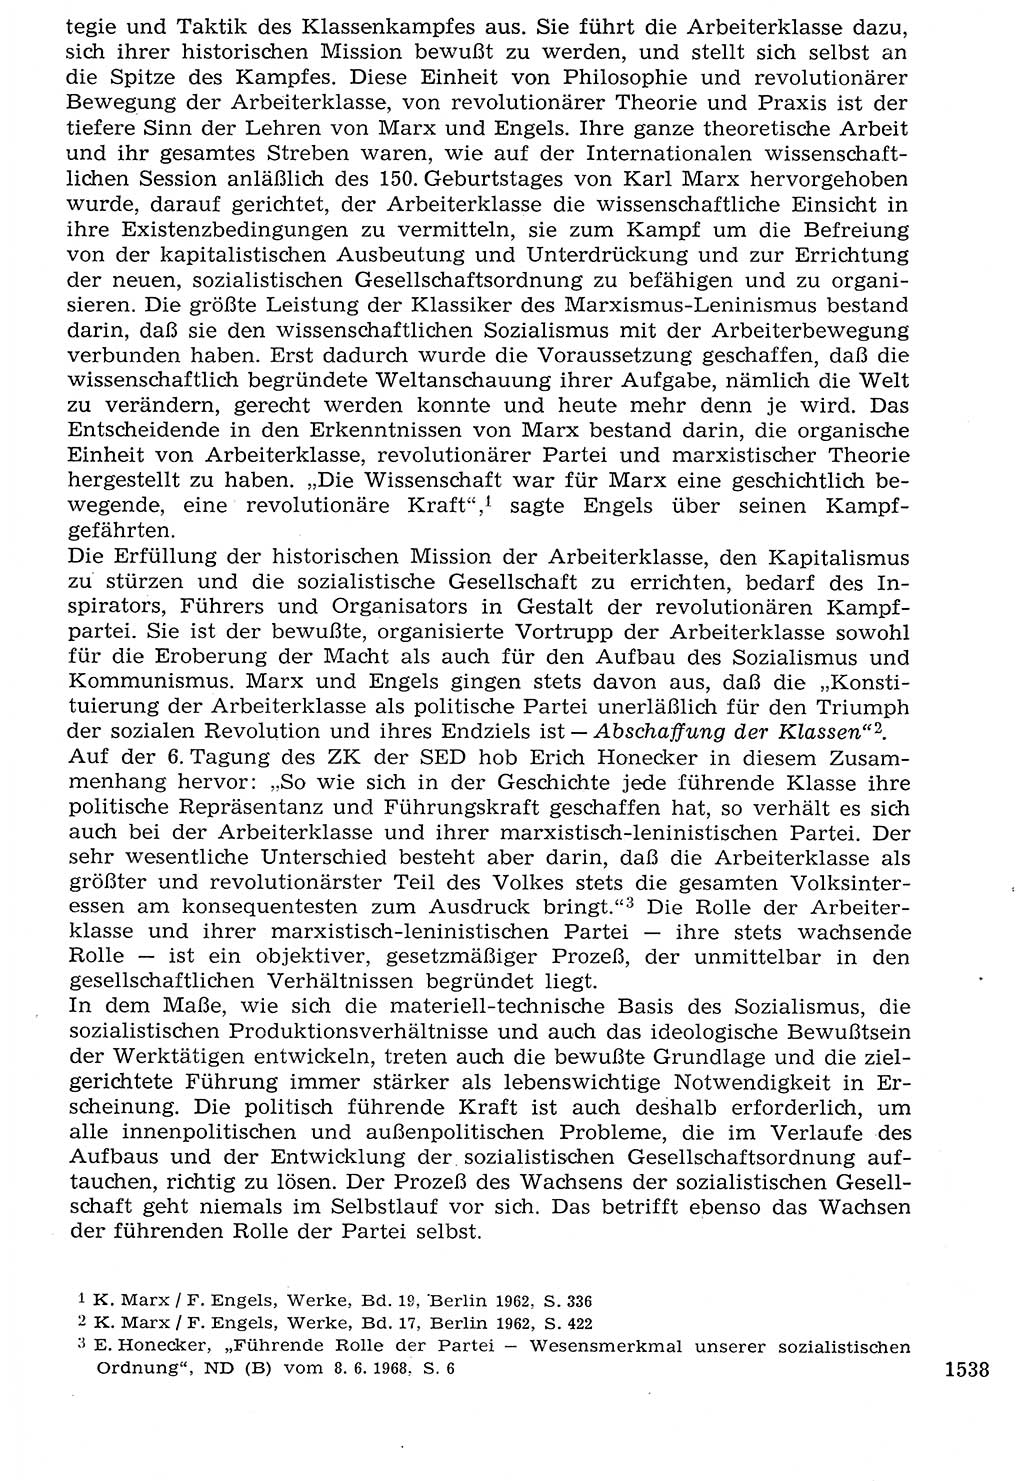 Staat und Recht (StuR), 17. Jahrgang [Deutsche Demokratische Republik (DDR)] 1968, Seite 1538 (StuR DDR 1968, S. 1538)